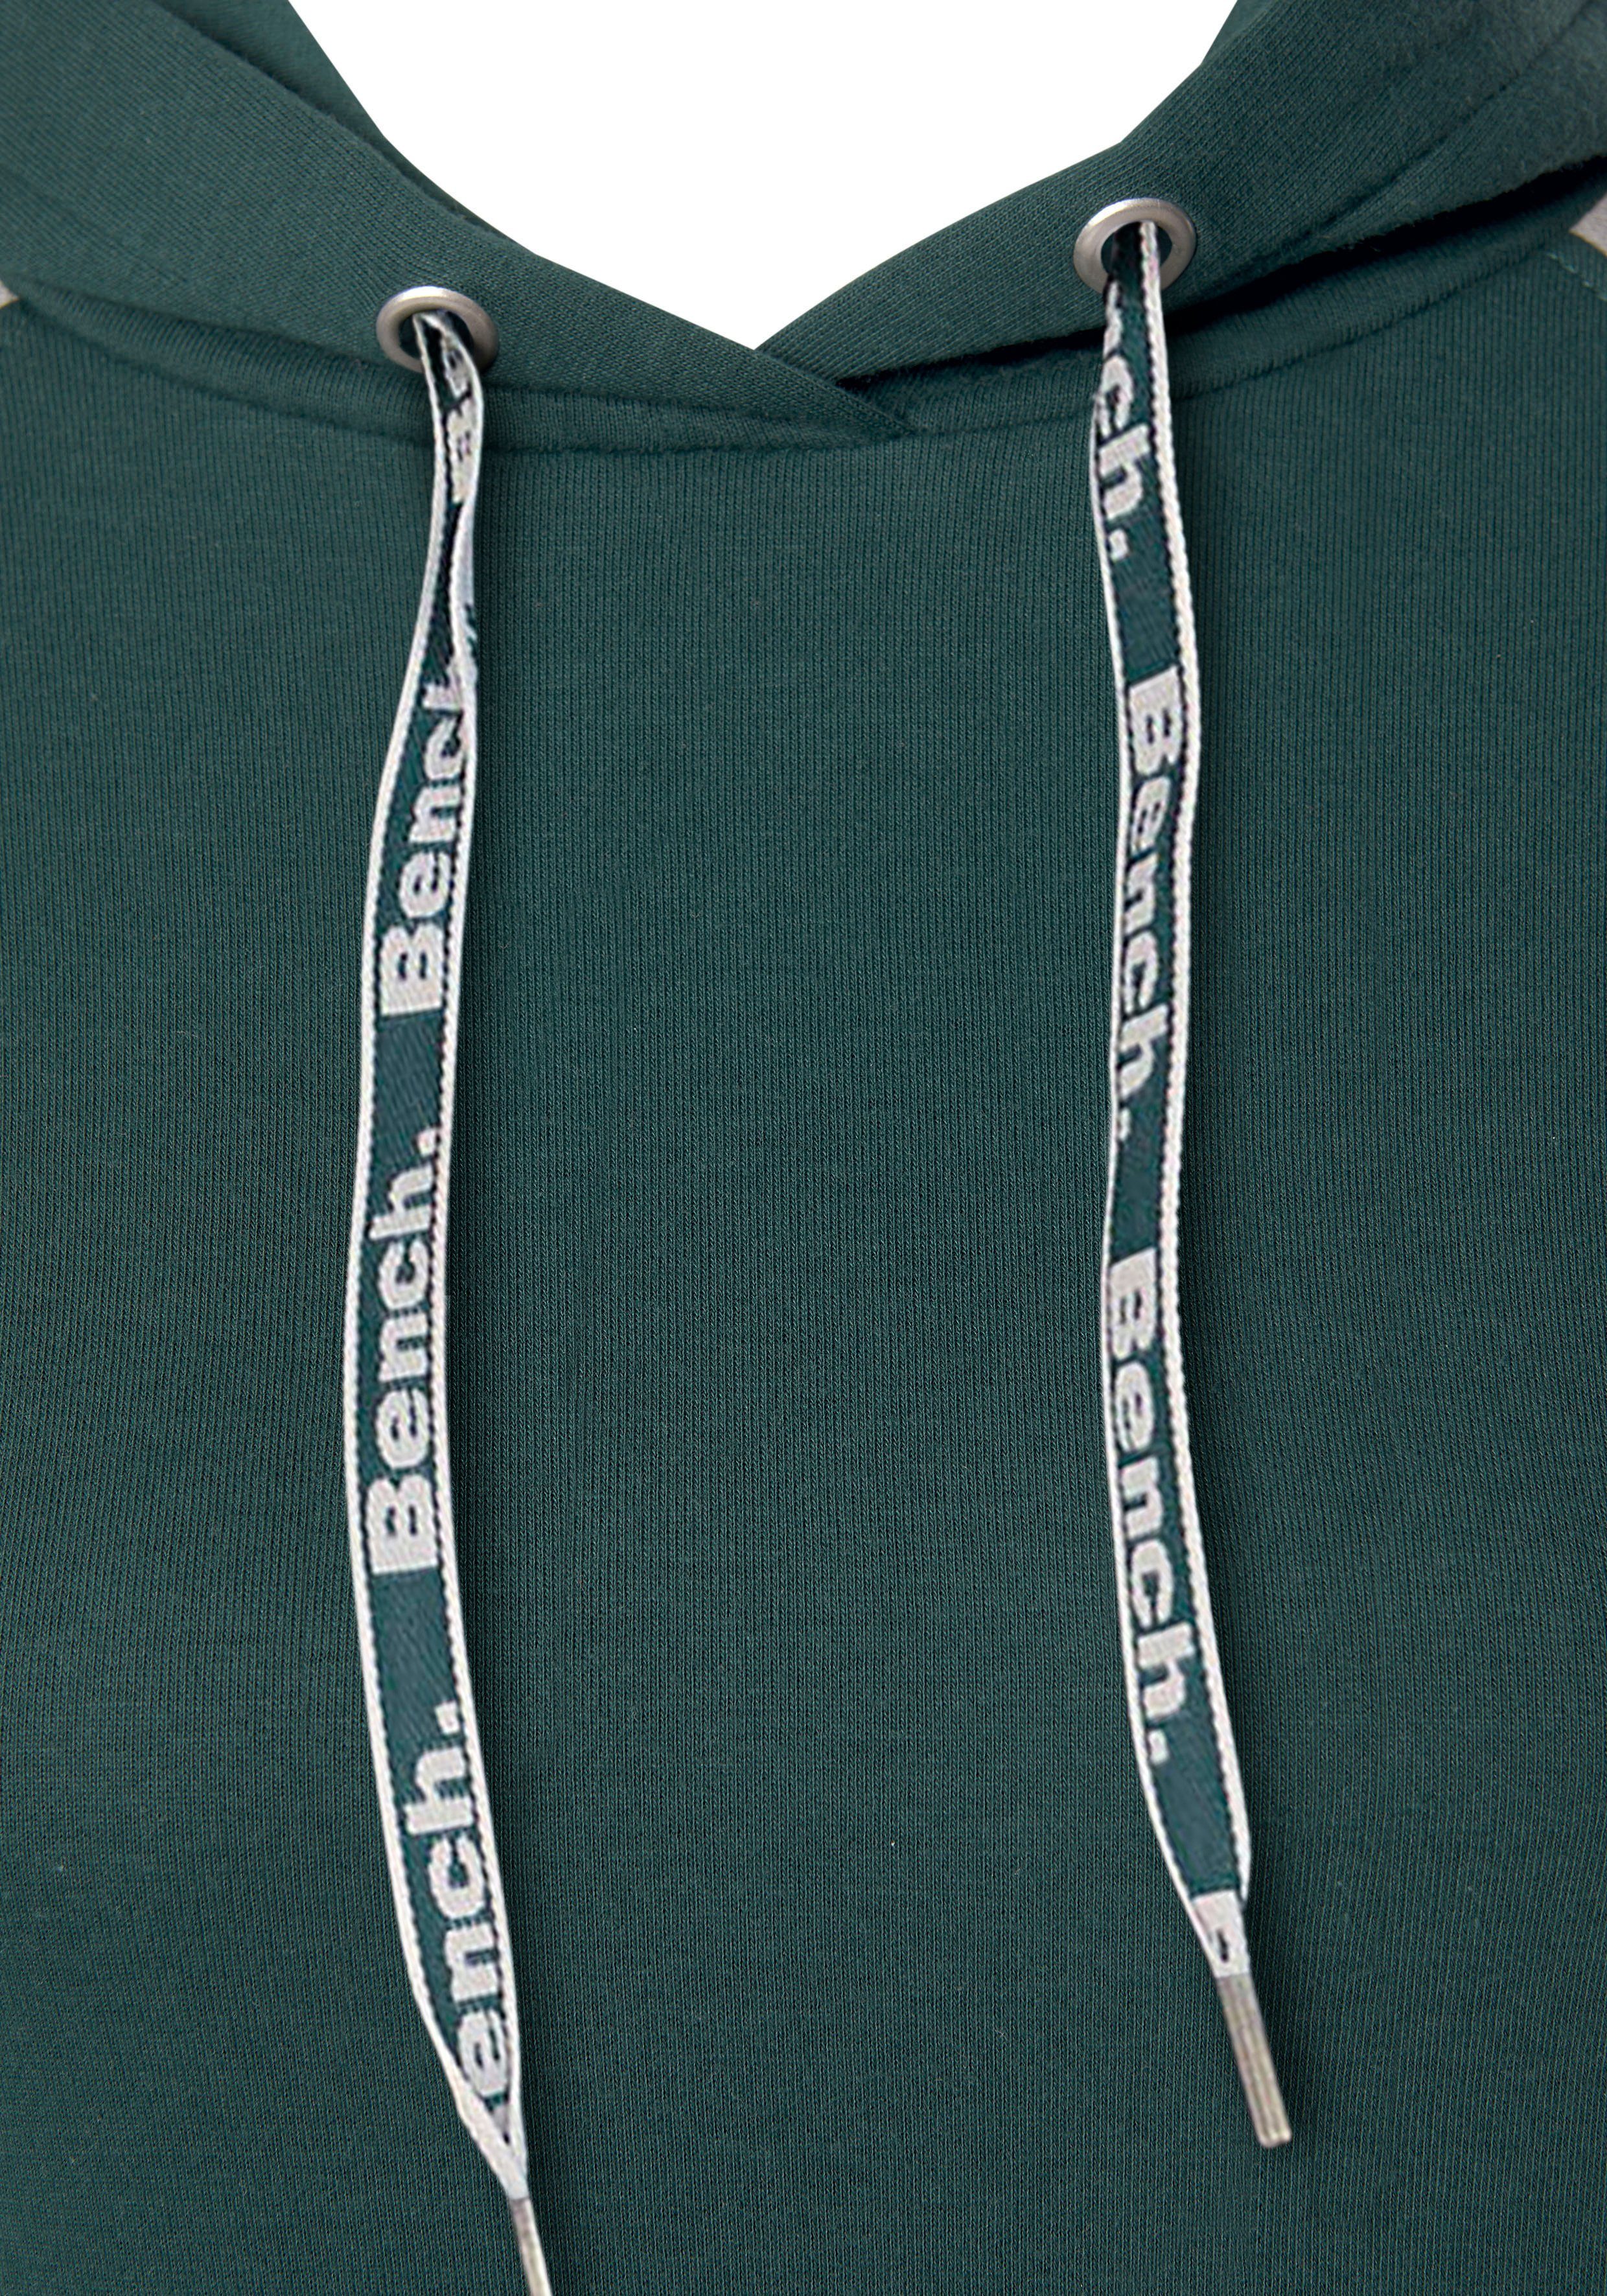 Bench. Loungewear Sweatkleid abgesetzten Kapuze dunkelgrün-grau farblich und mit Ärmeln